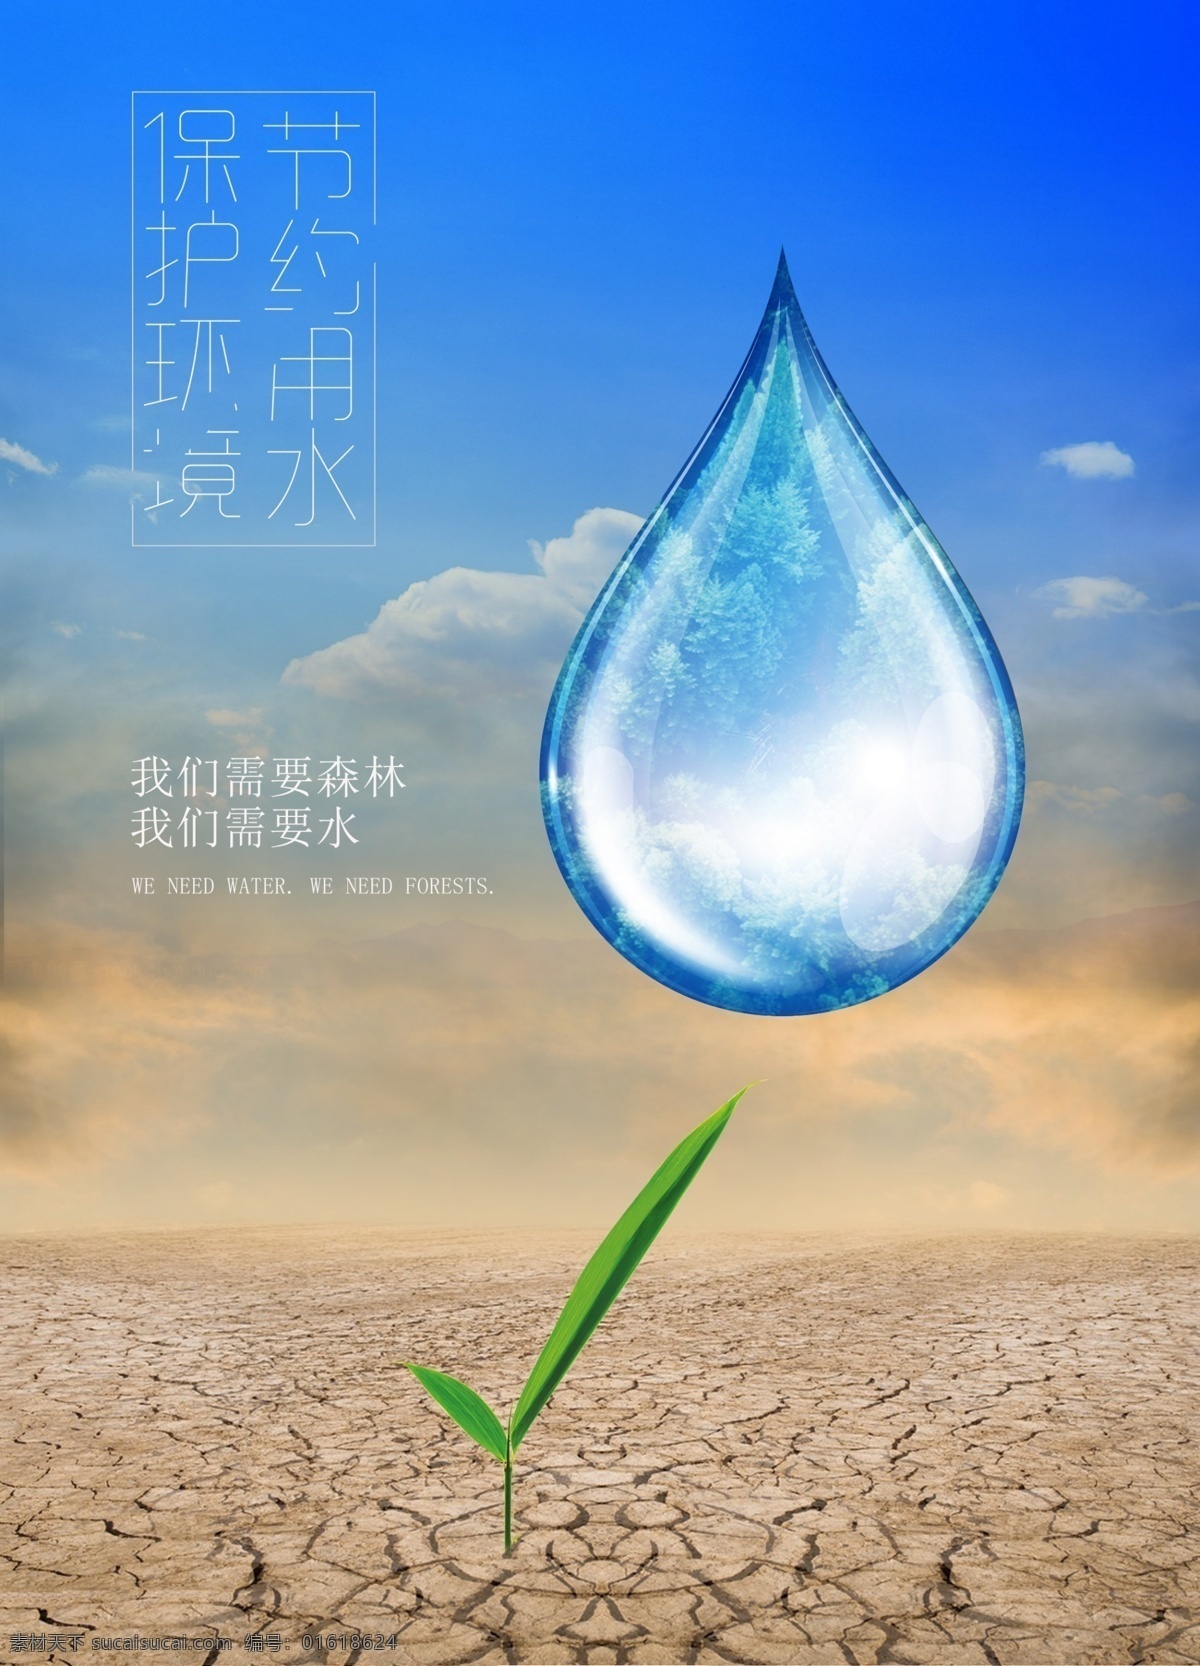 节约 用水 保护 环境 节约用水 保护环境 干旱 水滴 海报背景 水